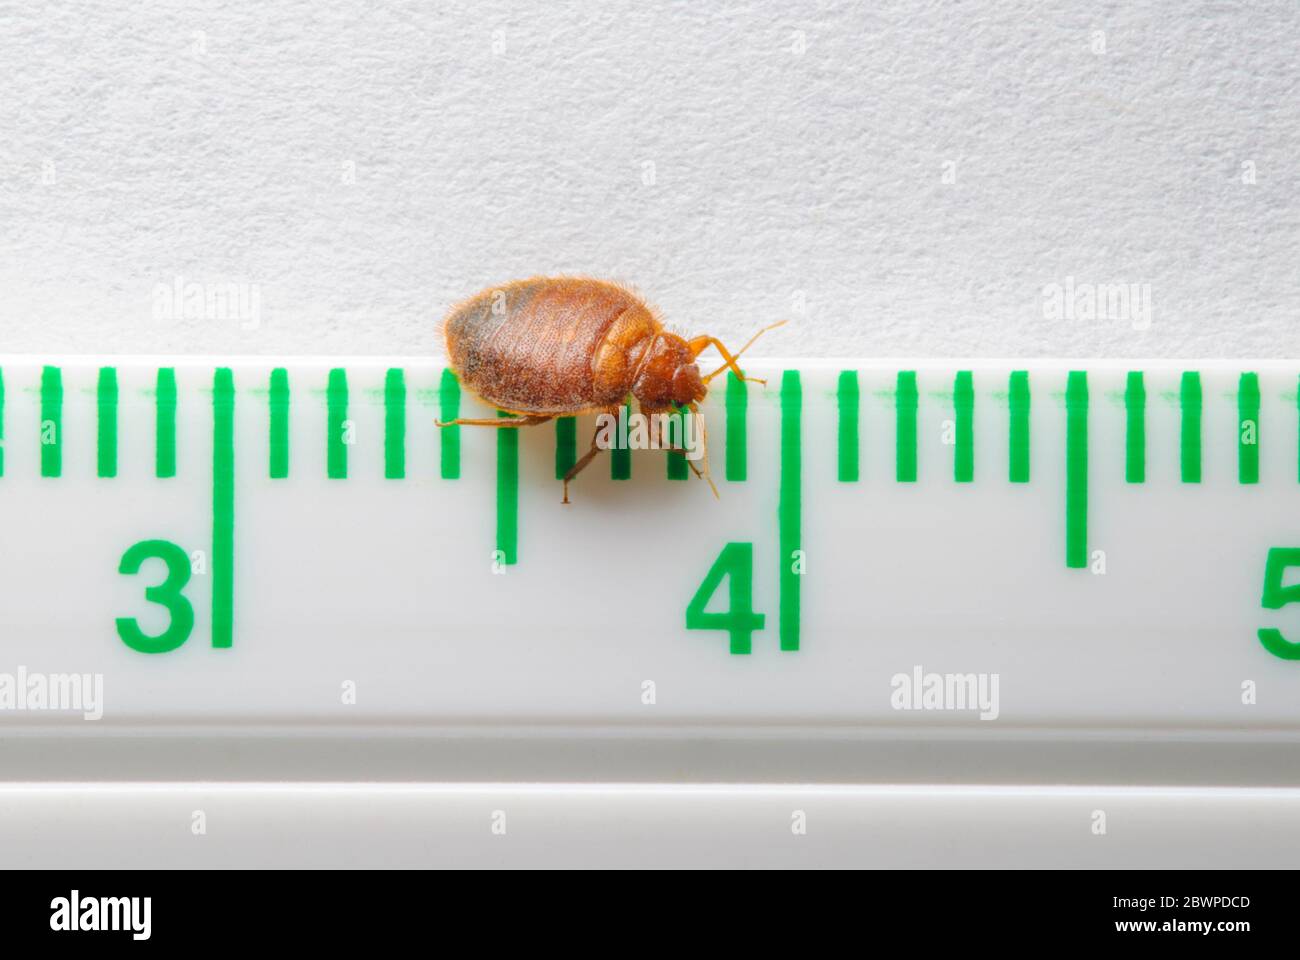 Punaise de lit d'adulte commune (Cimex lectularius) sur une règle millimétrique/ pouce, montre la taille réelle de cet insecte nuisible. Photographié dans le Colorado aux États-Unis. Banque D'Images